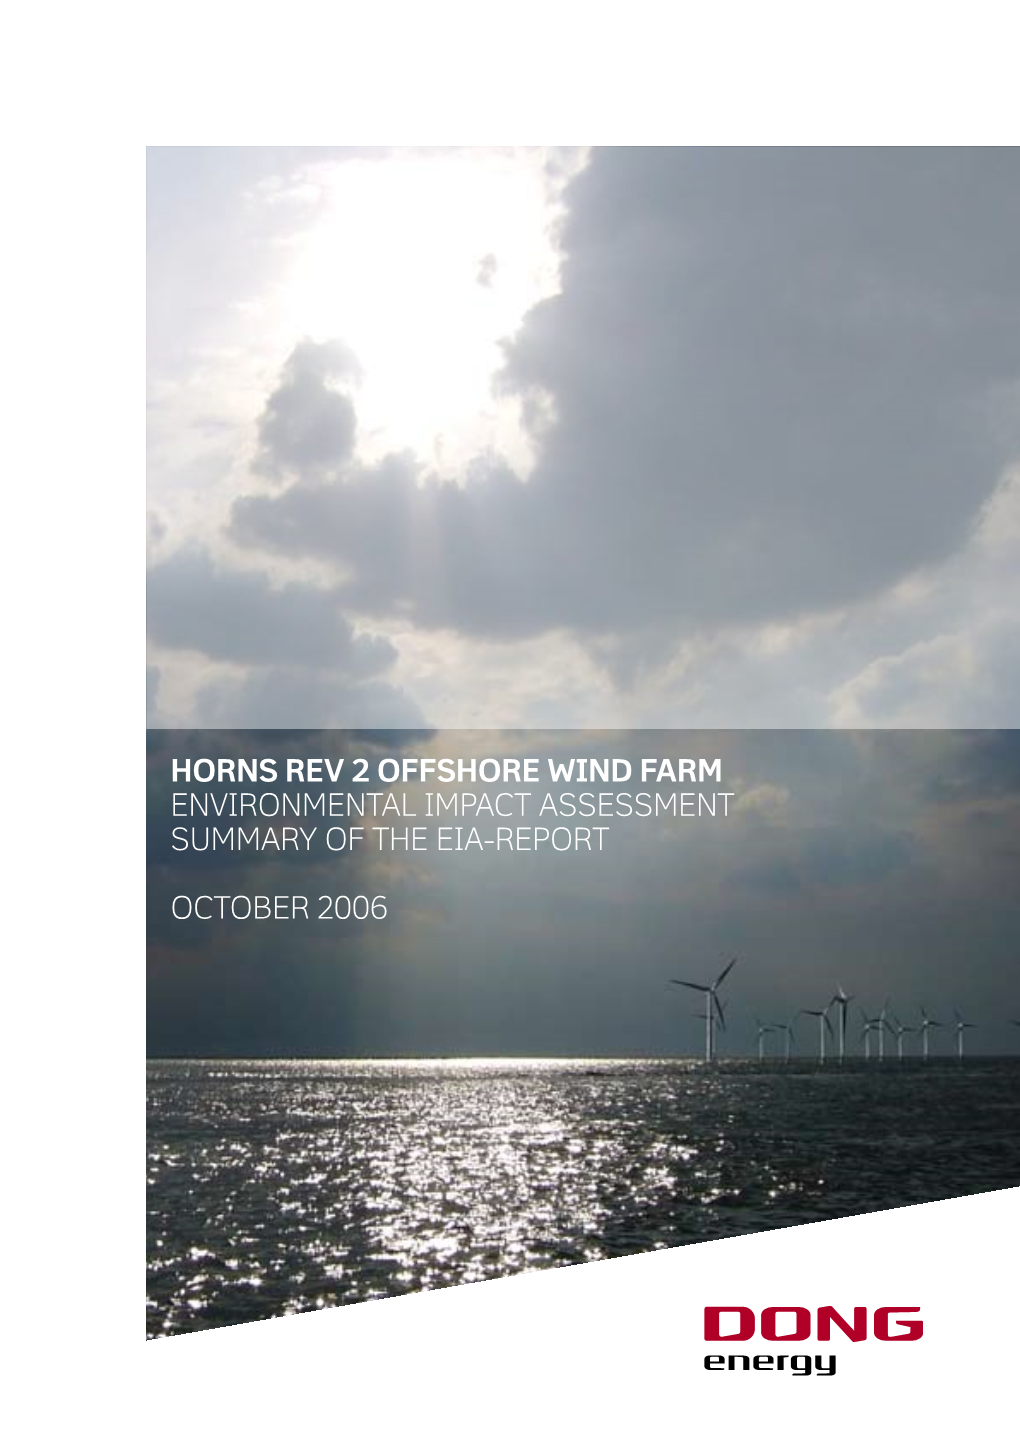 Horns Rev Offshore Wind Farm Environmental Impact Assessment